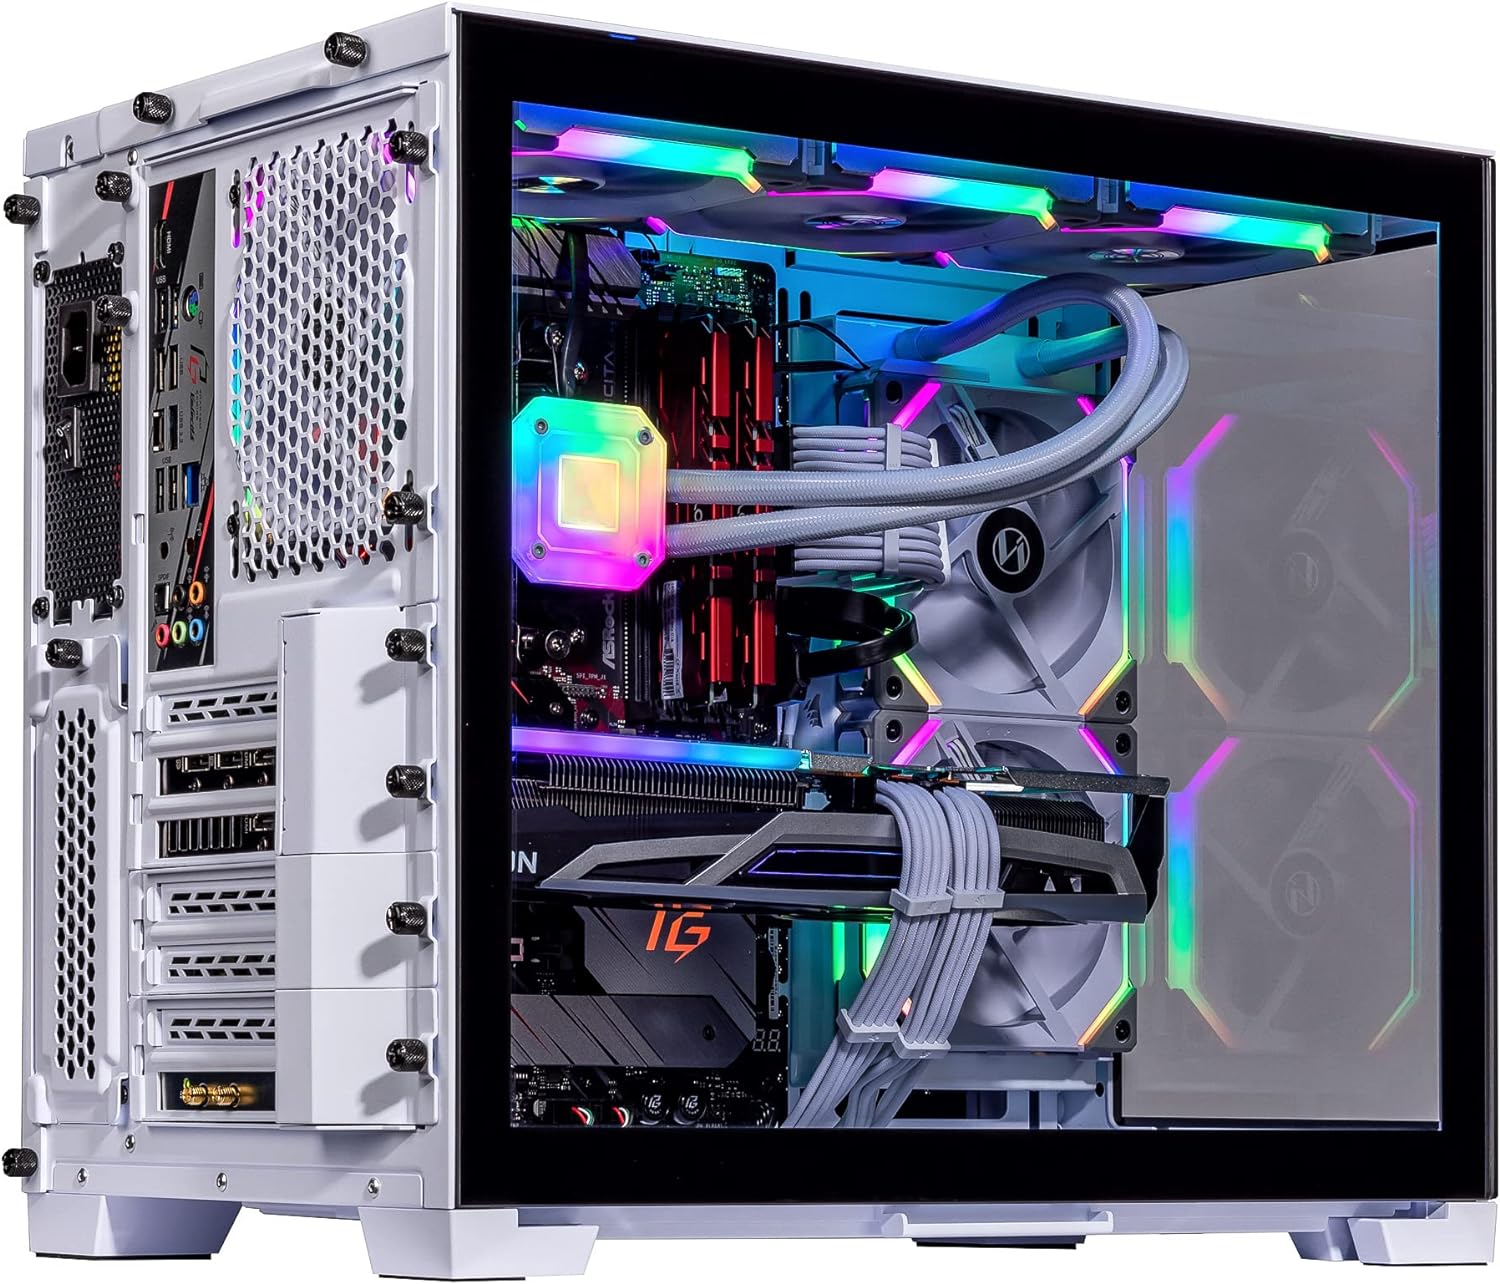 Velztorm Mini Lux Gaming Desktop PC (AMD Ryzen 9 5950X 16-Core, Radeon RX 7900 XTX, 16GB RAM, 1TB PCIe SSD + 2TB HDD (3.5), WiFi, USB 3.2, HDMI, Display Port, Win 10 Home)